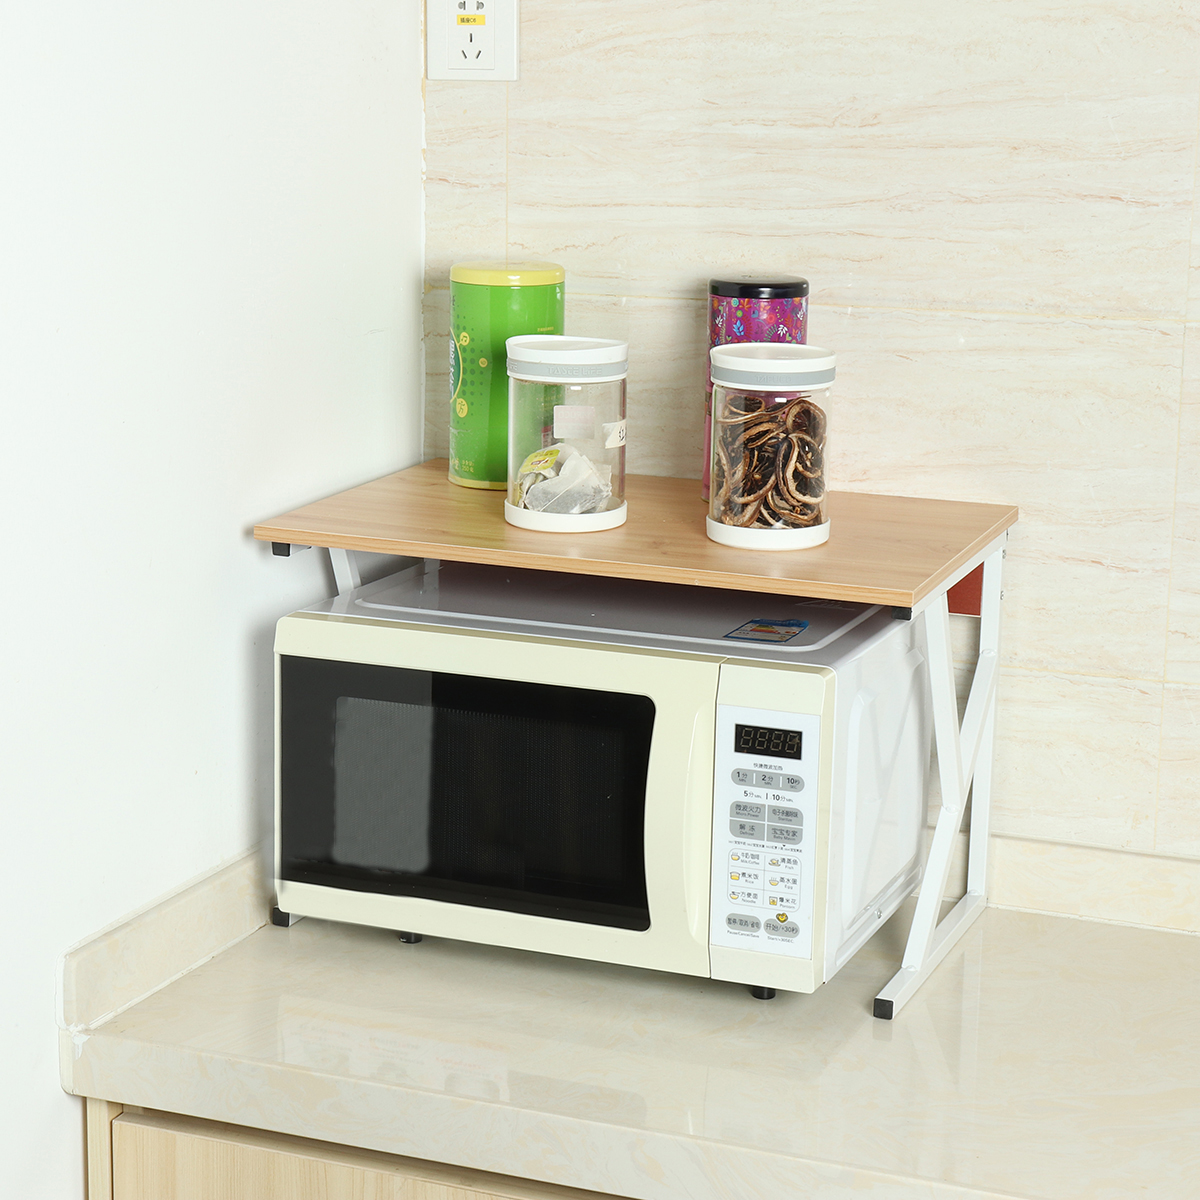 Microwave Oven Rack Kitchen Baker Stand Storage Shelf Kitchen Desktop Space Saving Organizer 86